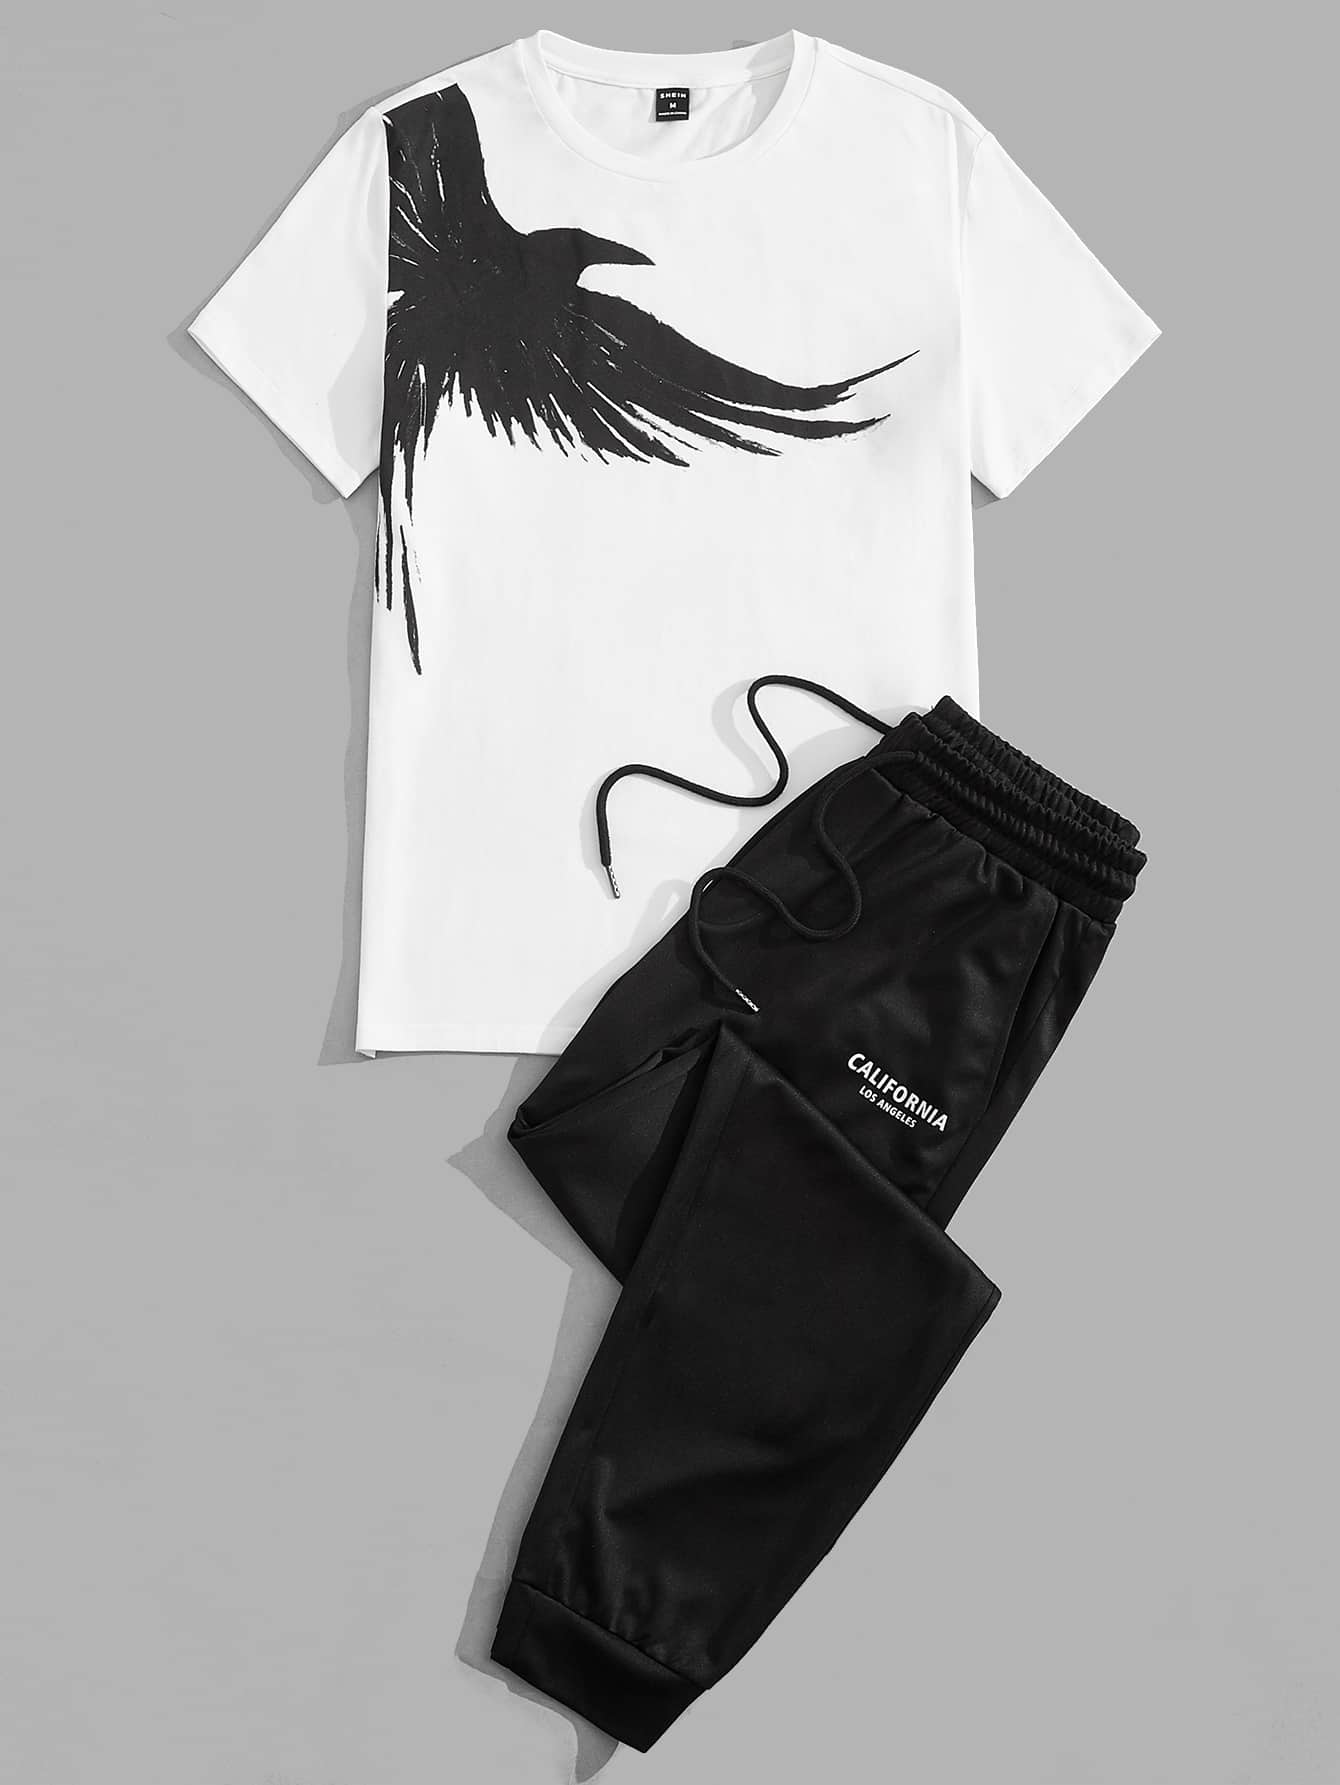 Мужской вязаный комплект из топа и брюк с короткими рукавами Manfinity Homme с принтом птиц, черное и белое